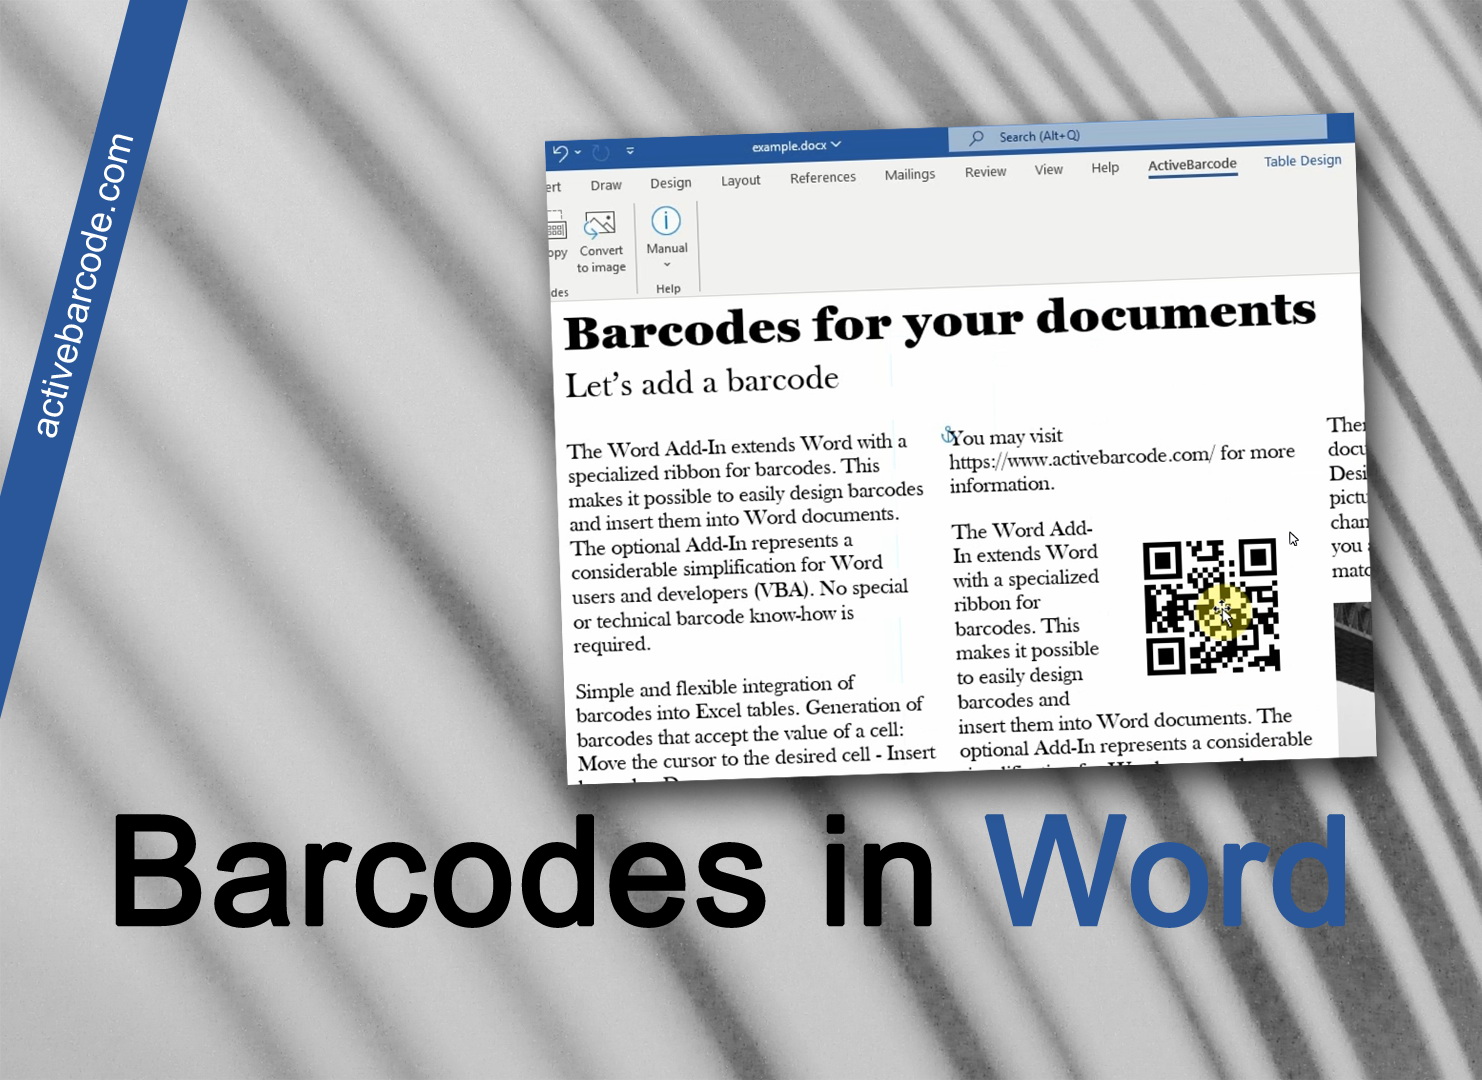 ActiveBarcode: So fügt man einen Barcode in ein Word Dokument ein.